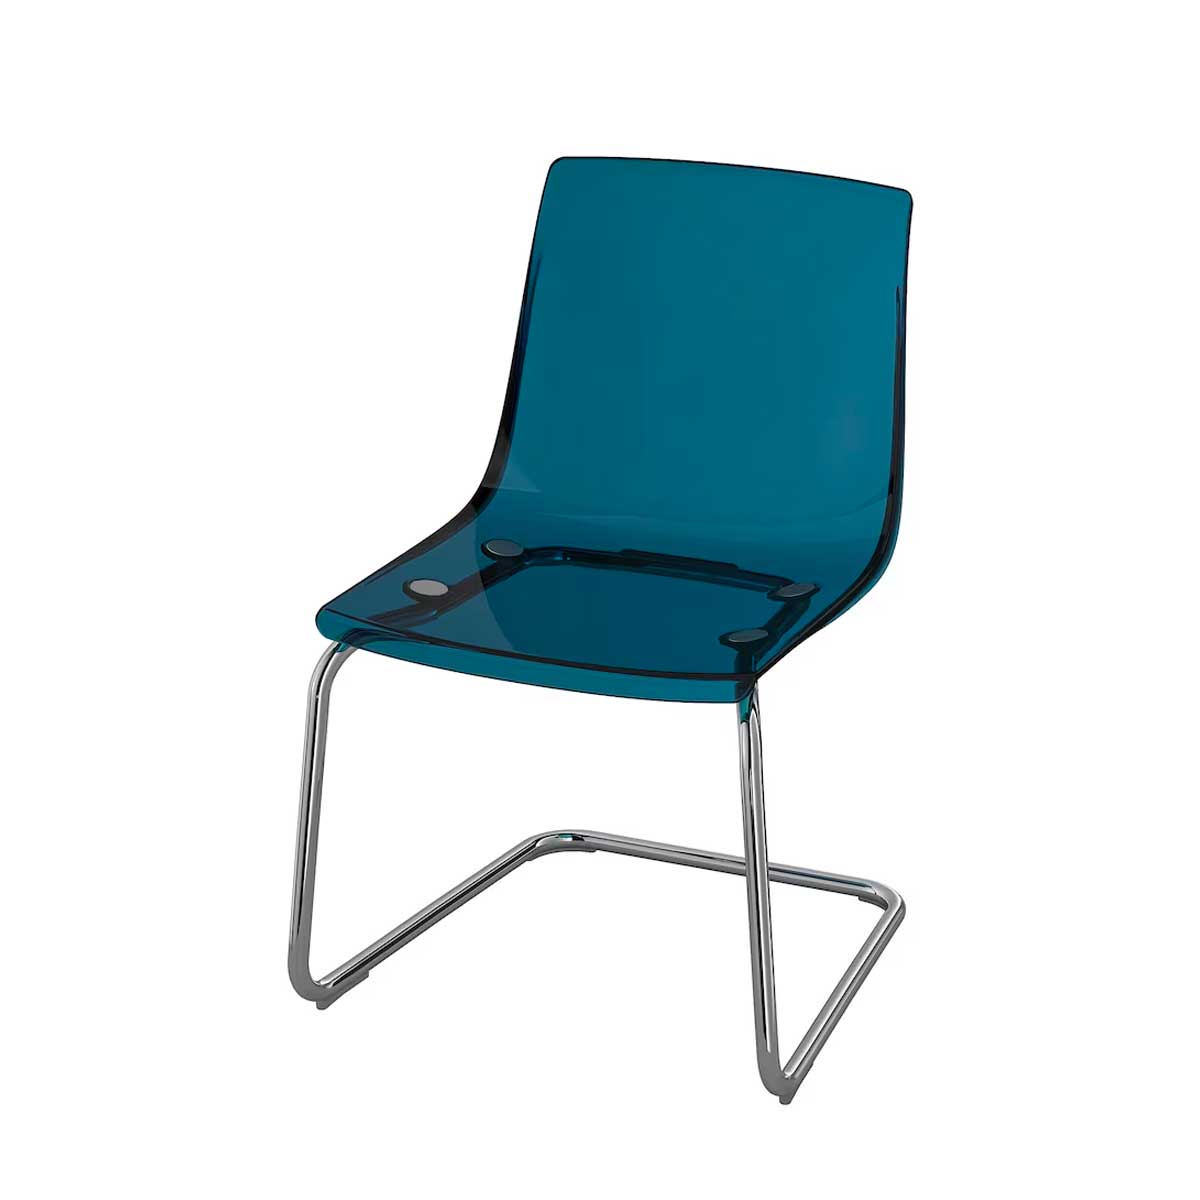 Tobias chair clear chrome